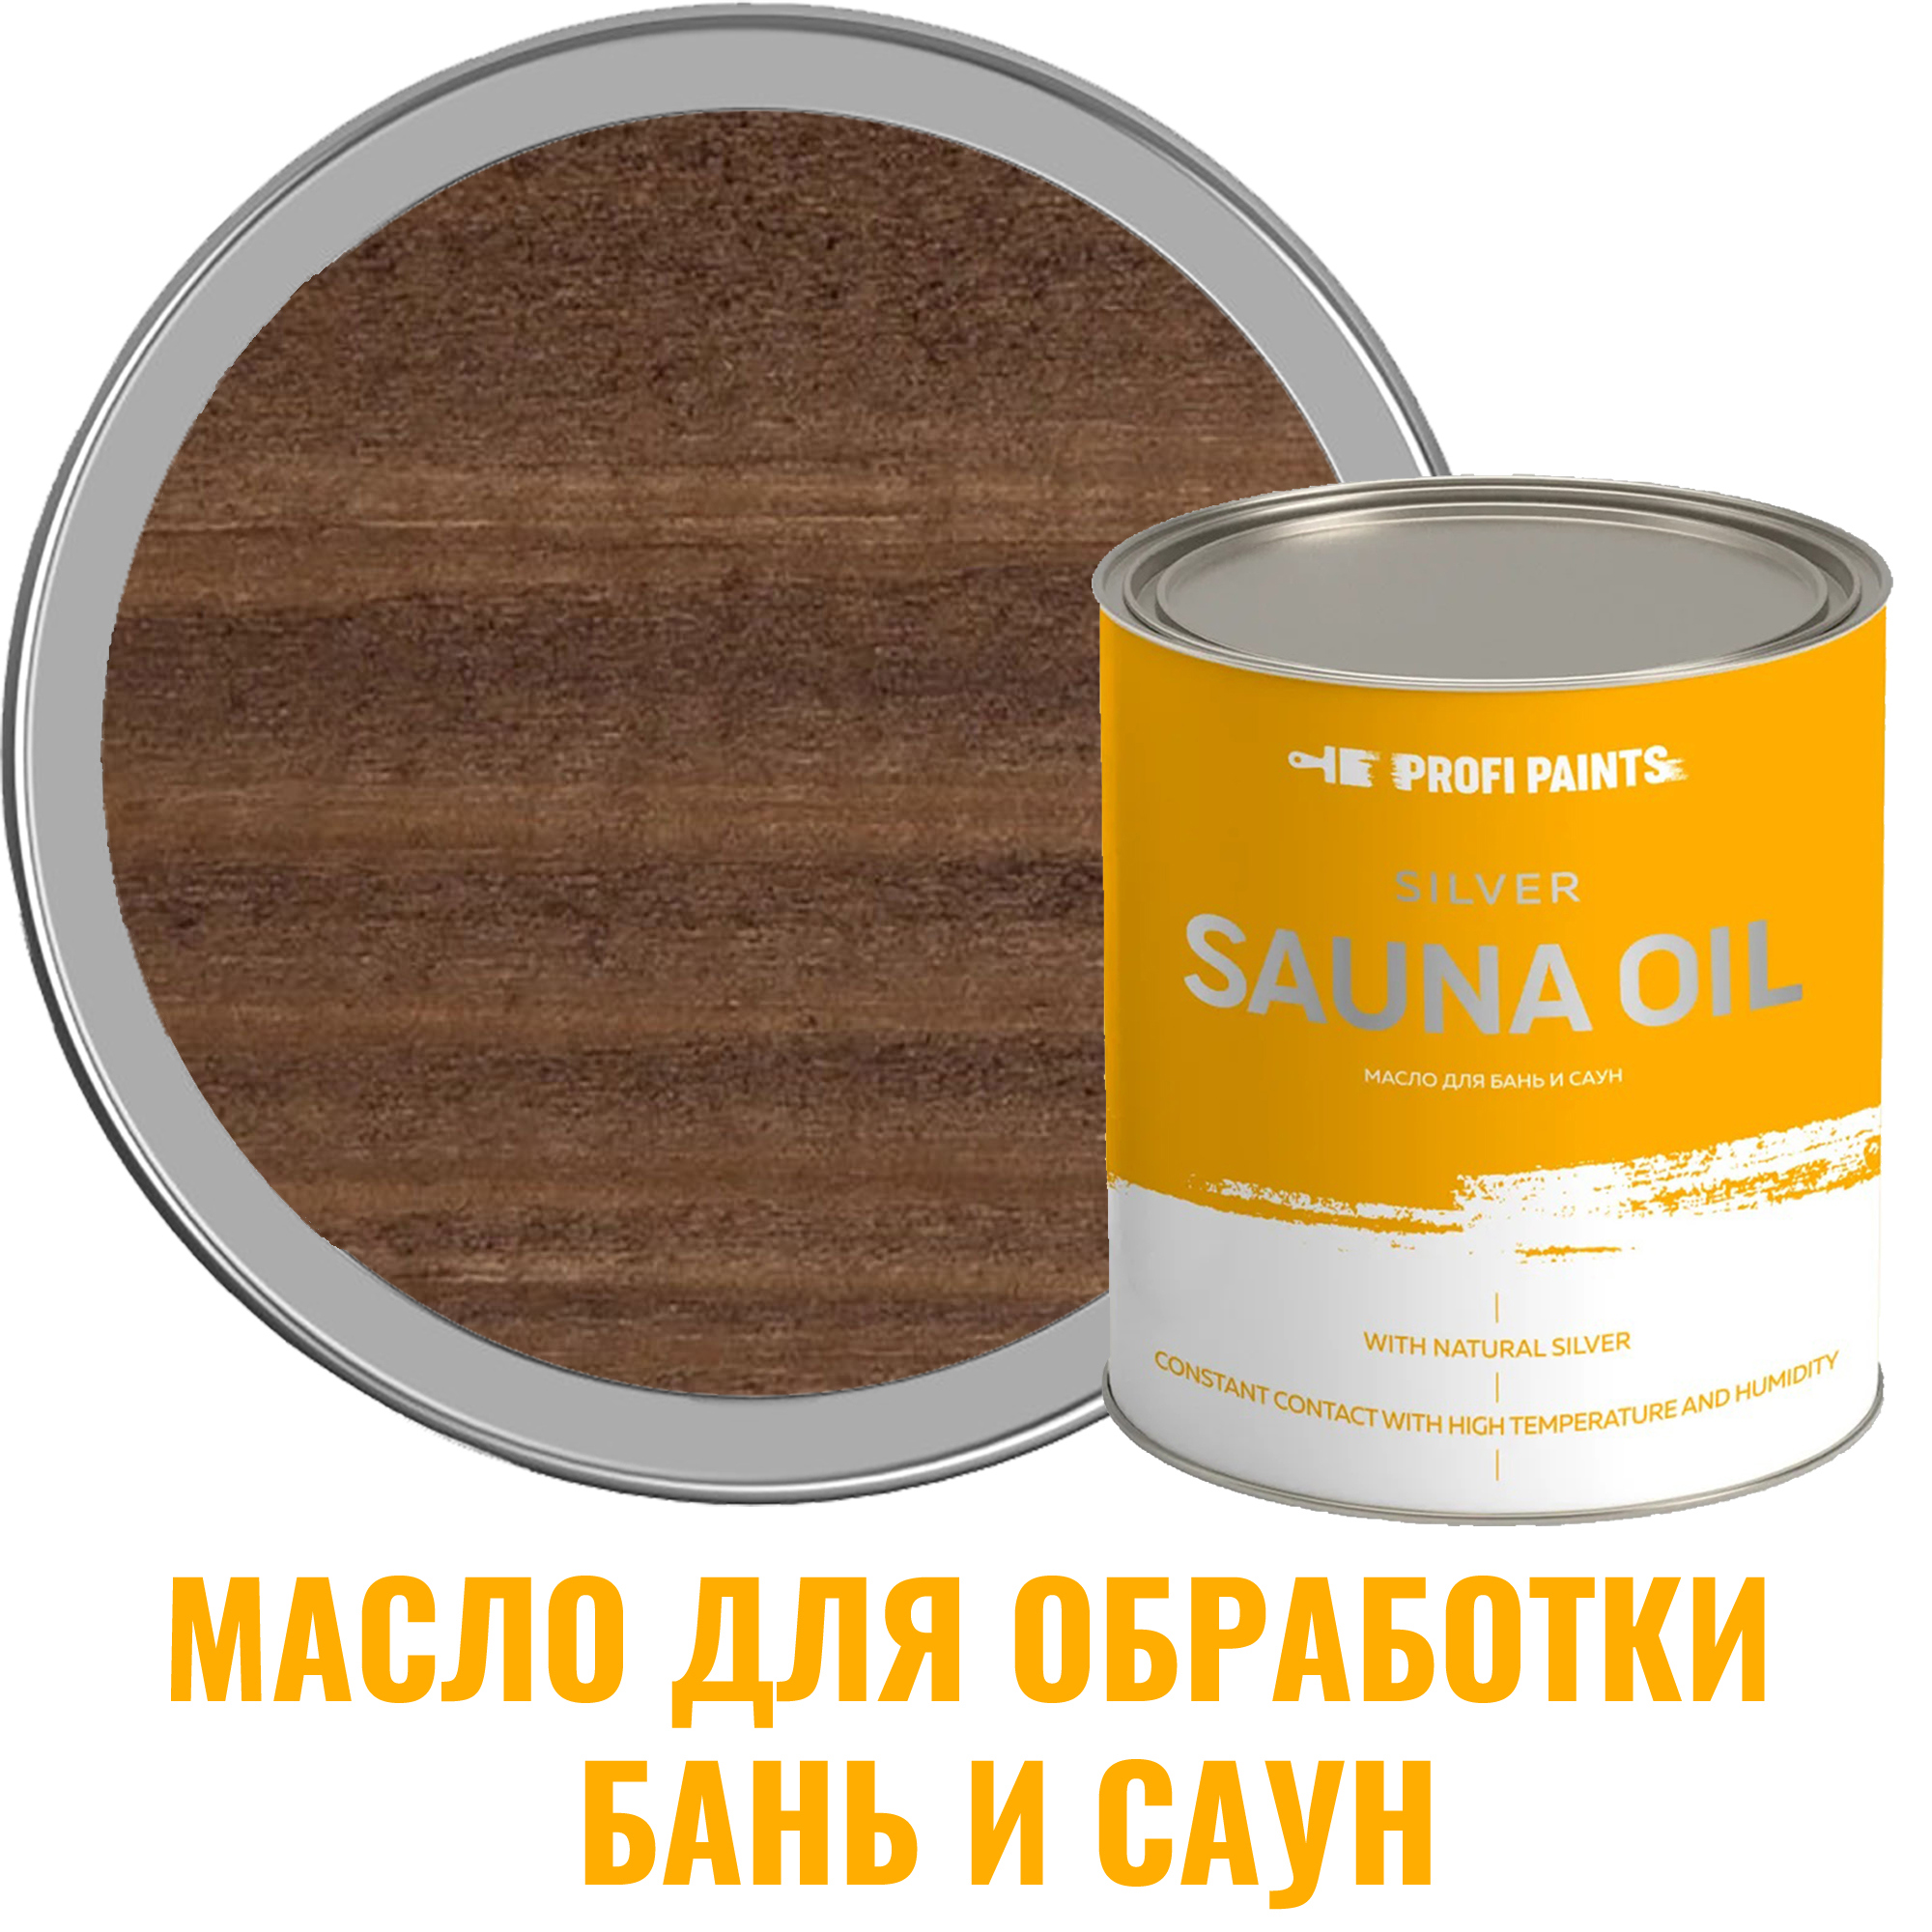 91095348 Масло для бань и саун 10784_D Silver Sauna Oil цвет орех 0.9 л STLM-0481712 PROFIPAINTS